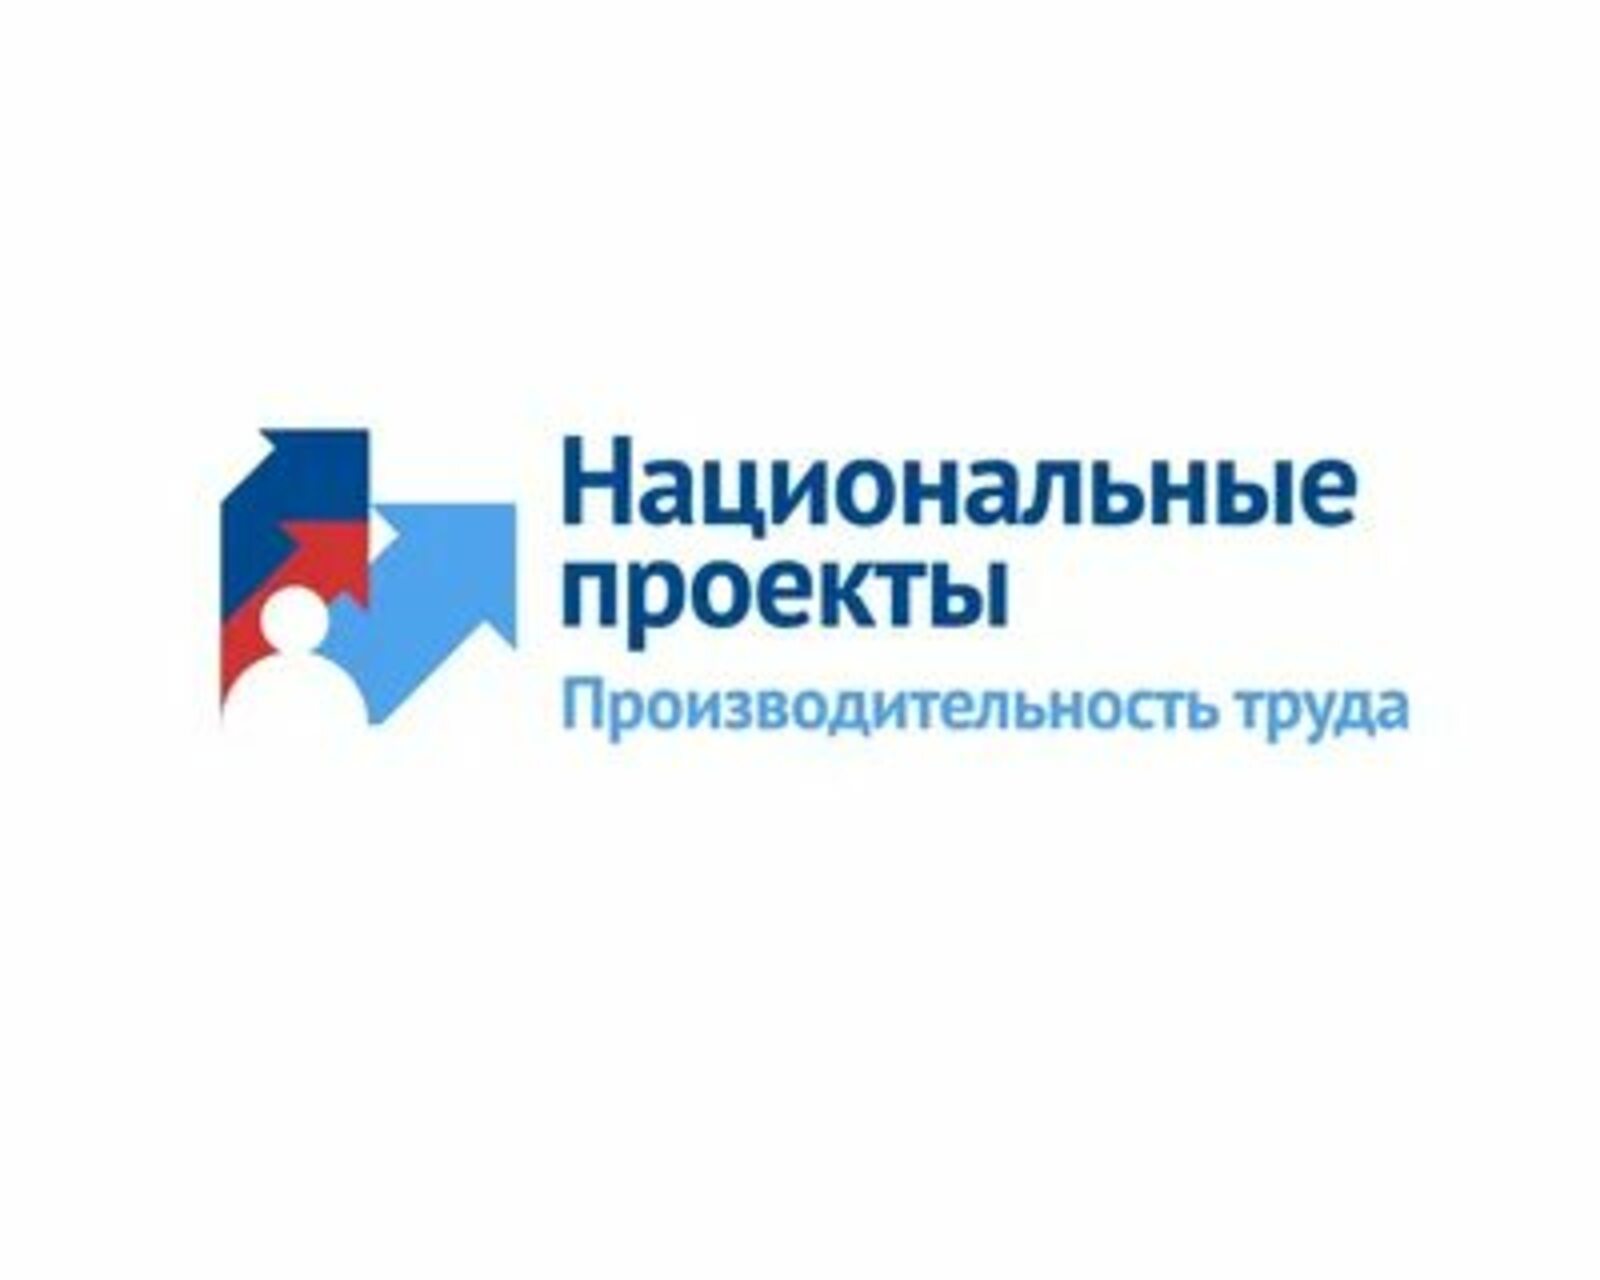 В Башкортостане 10 предприятий потребительского рынка присоединились к нацпроекту «Производительность труда»